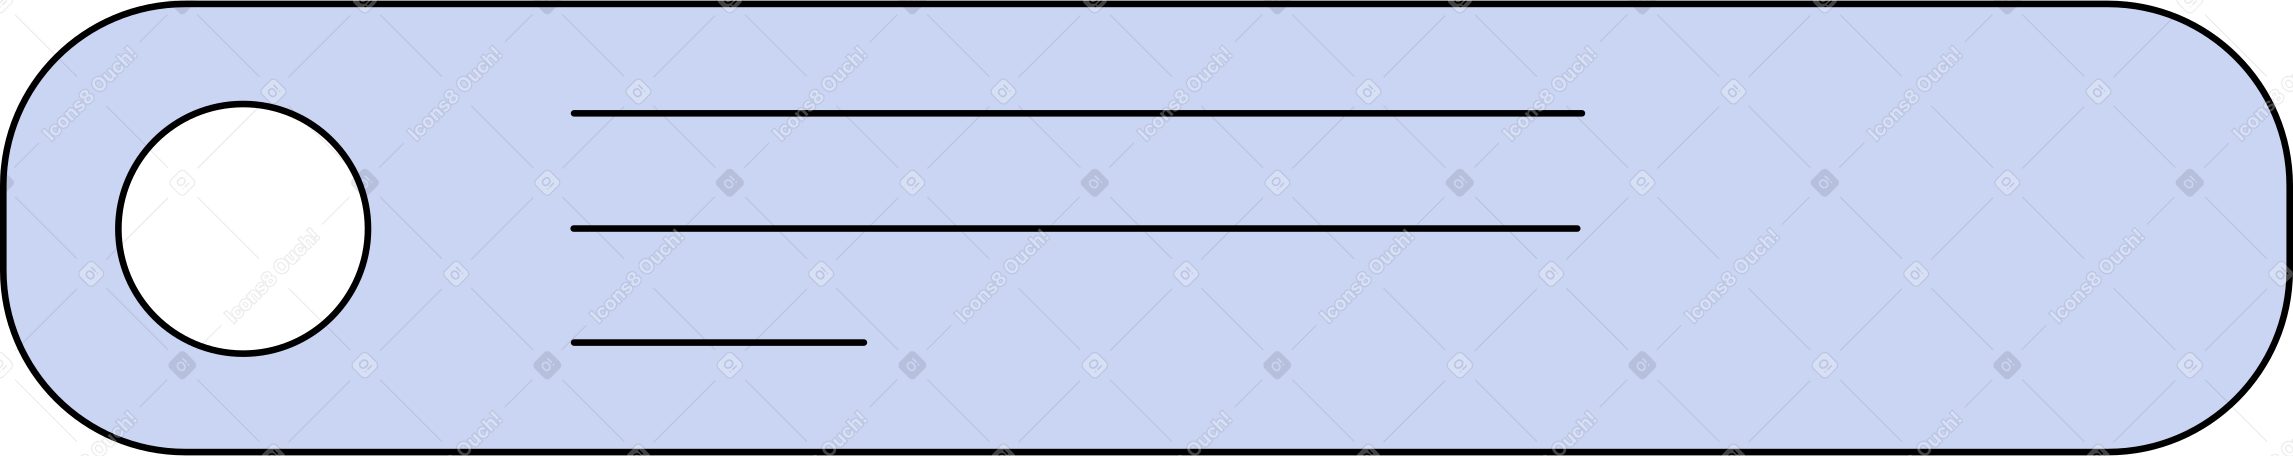 horizontal web element Illustration in PNG, SVG